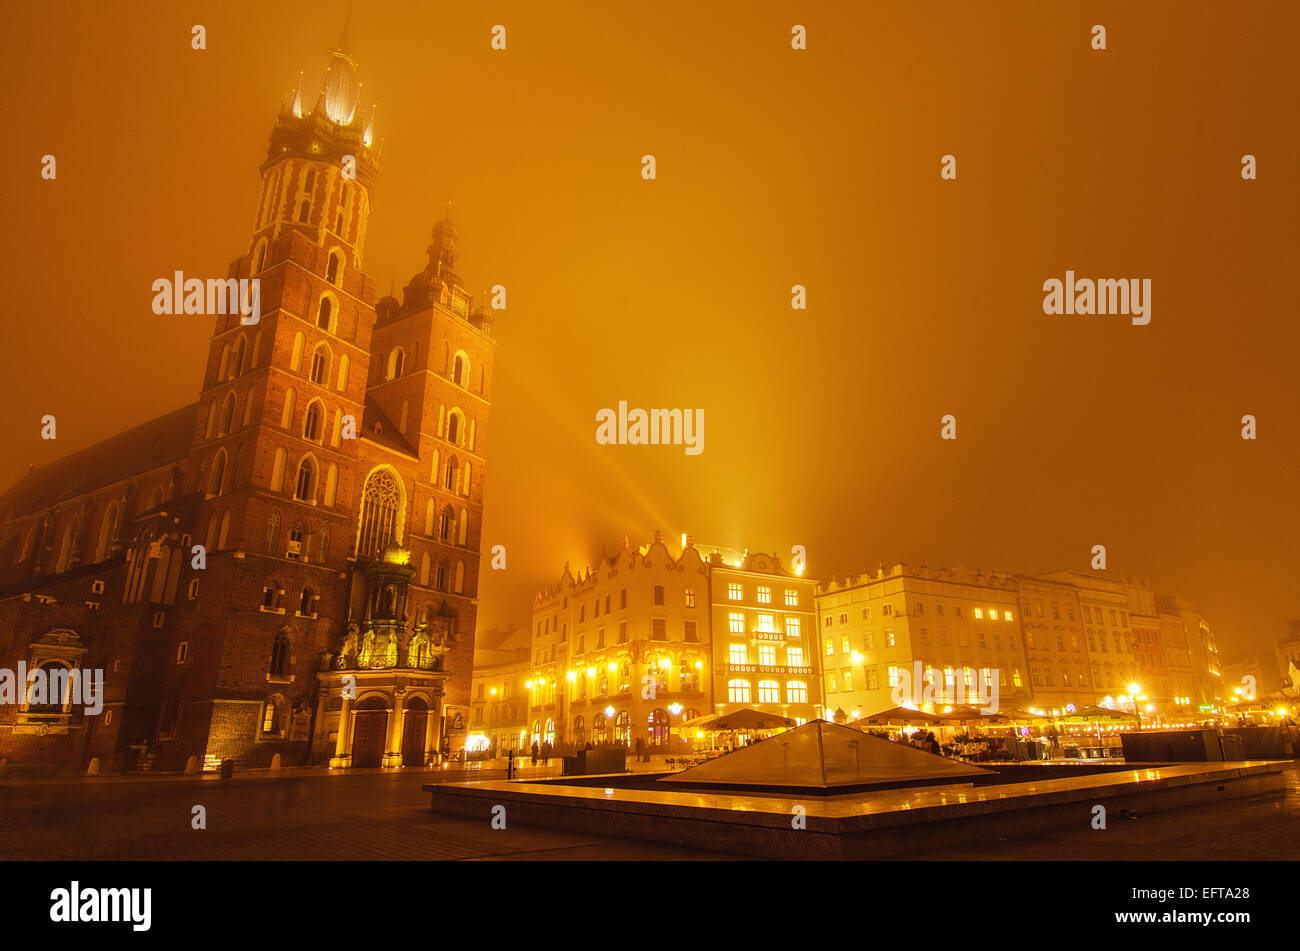 Marktplatz in Krakau in der nebligen Nacht mit der Marienkirche mit goldenen Himmel Stockfoto